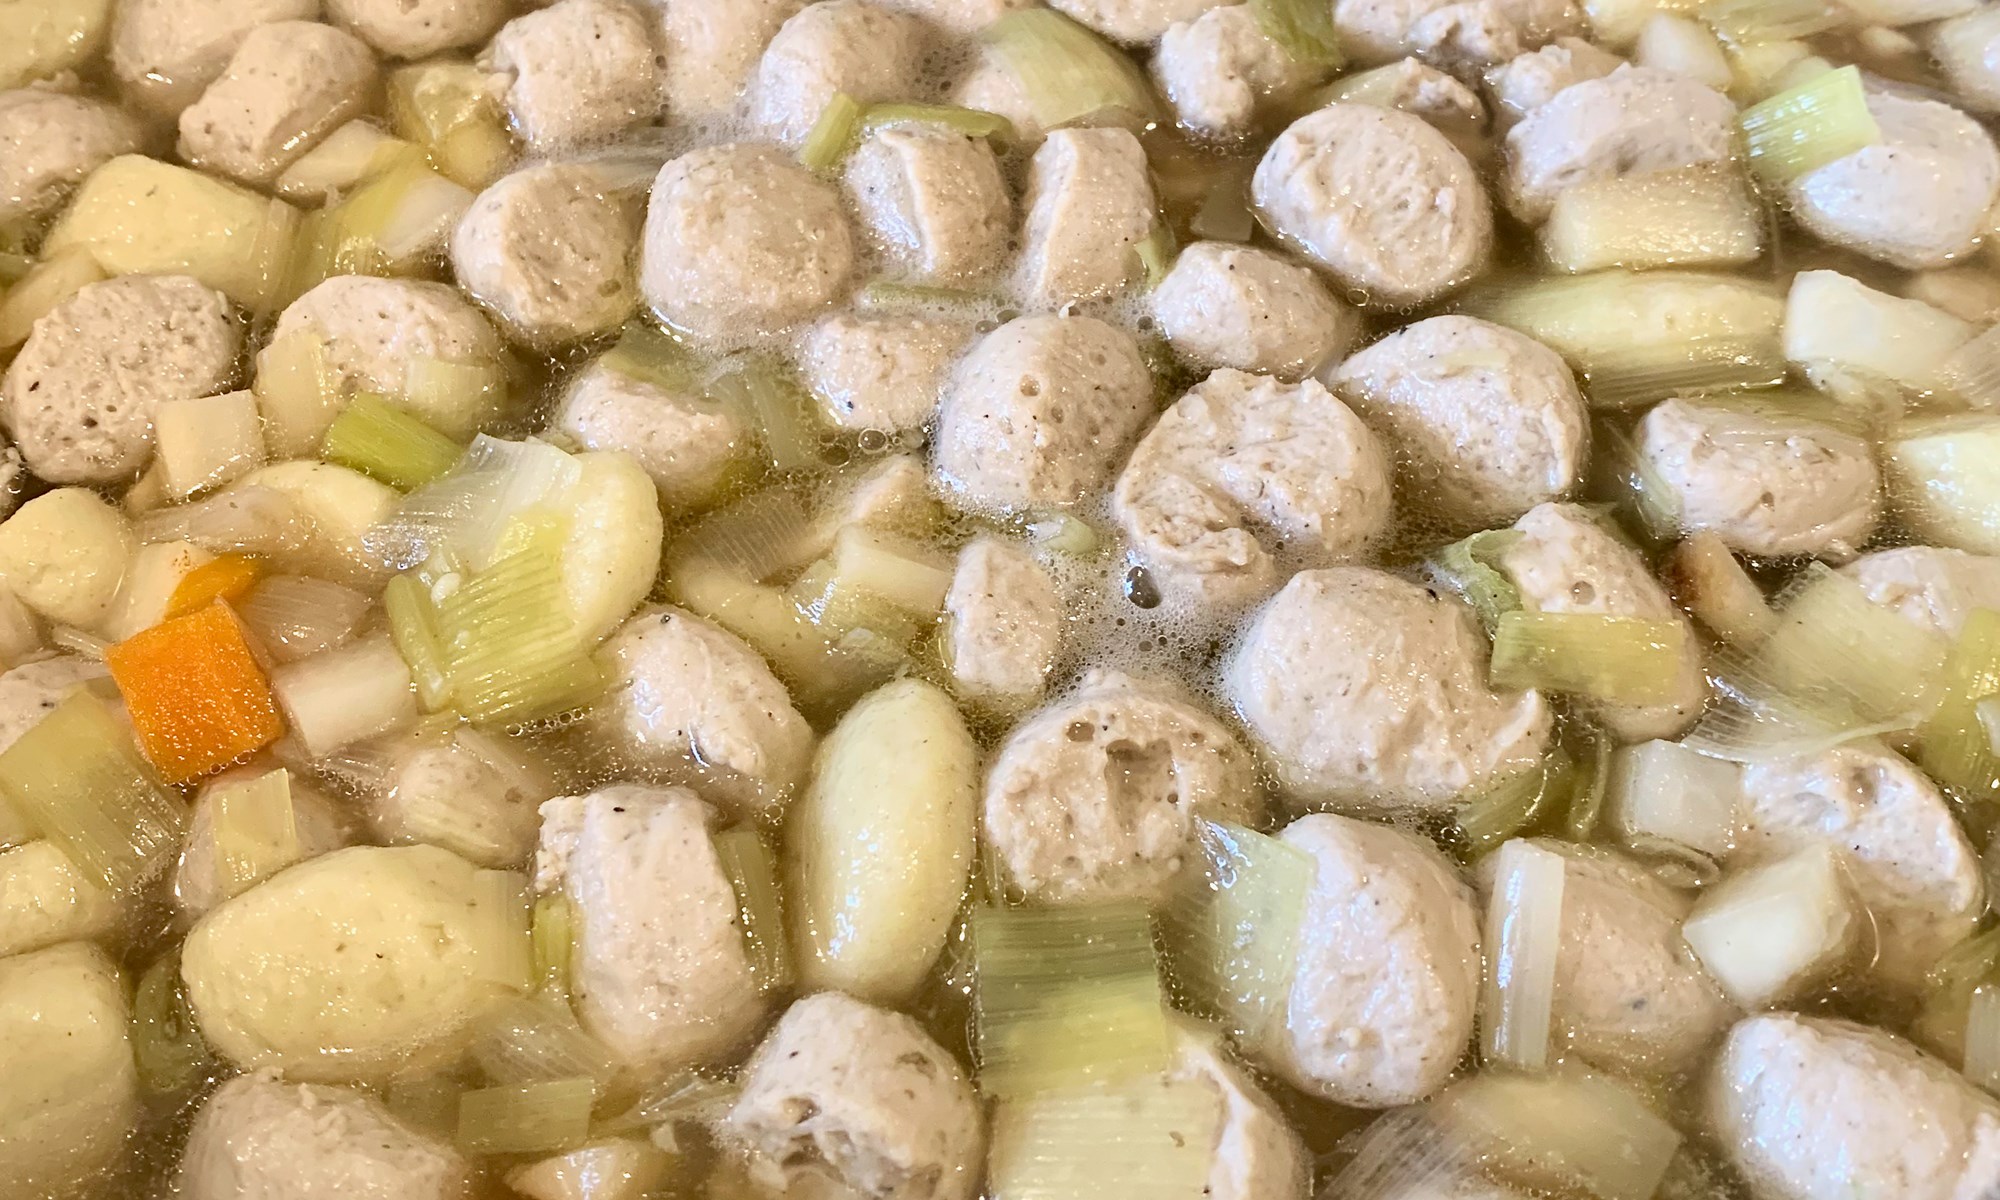 Kødboller & melboller til klar suppe med boller (consommé danoise)